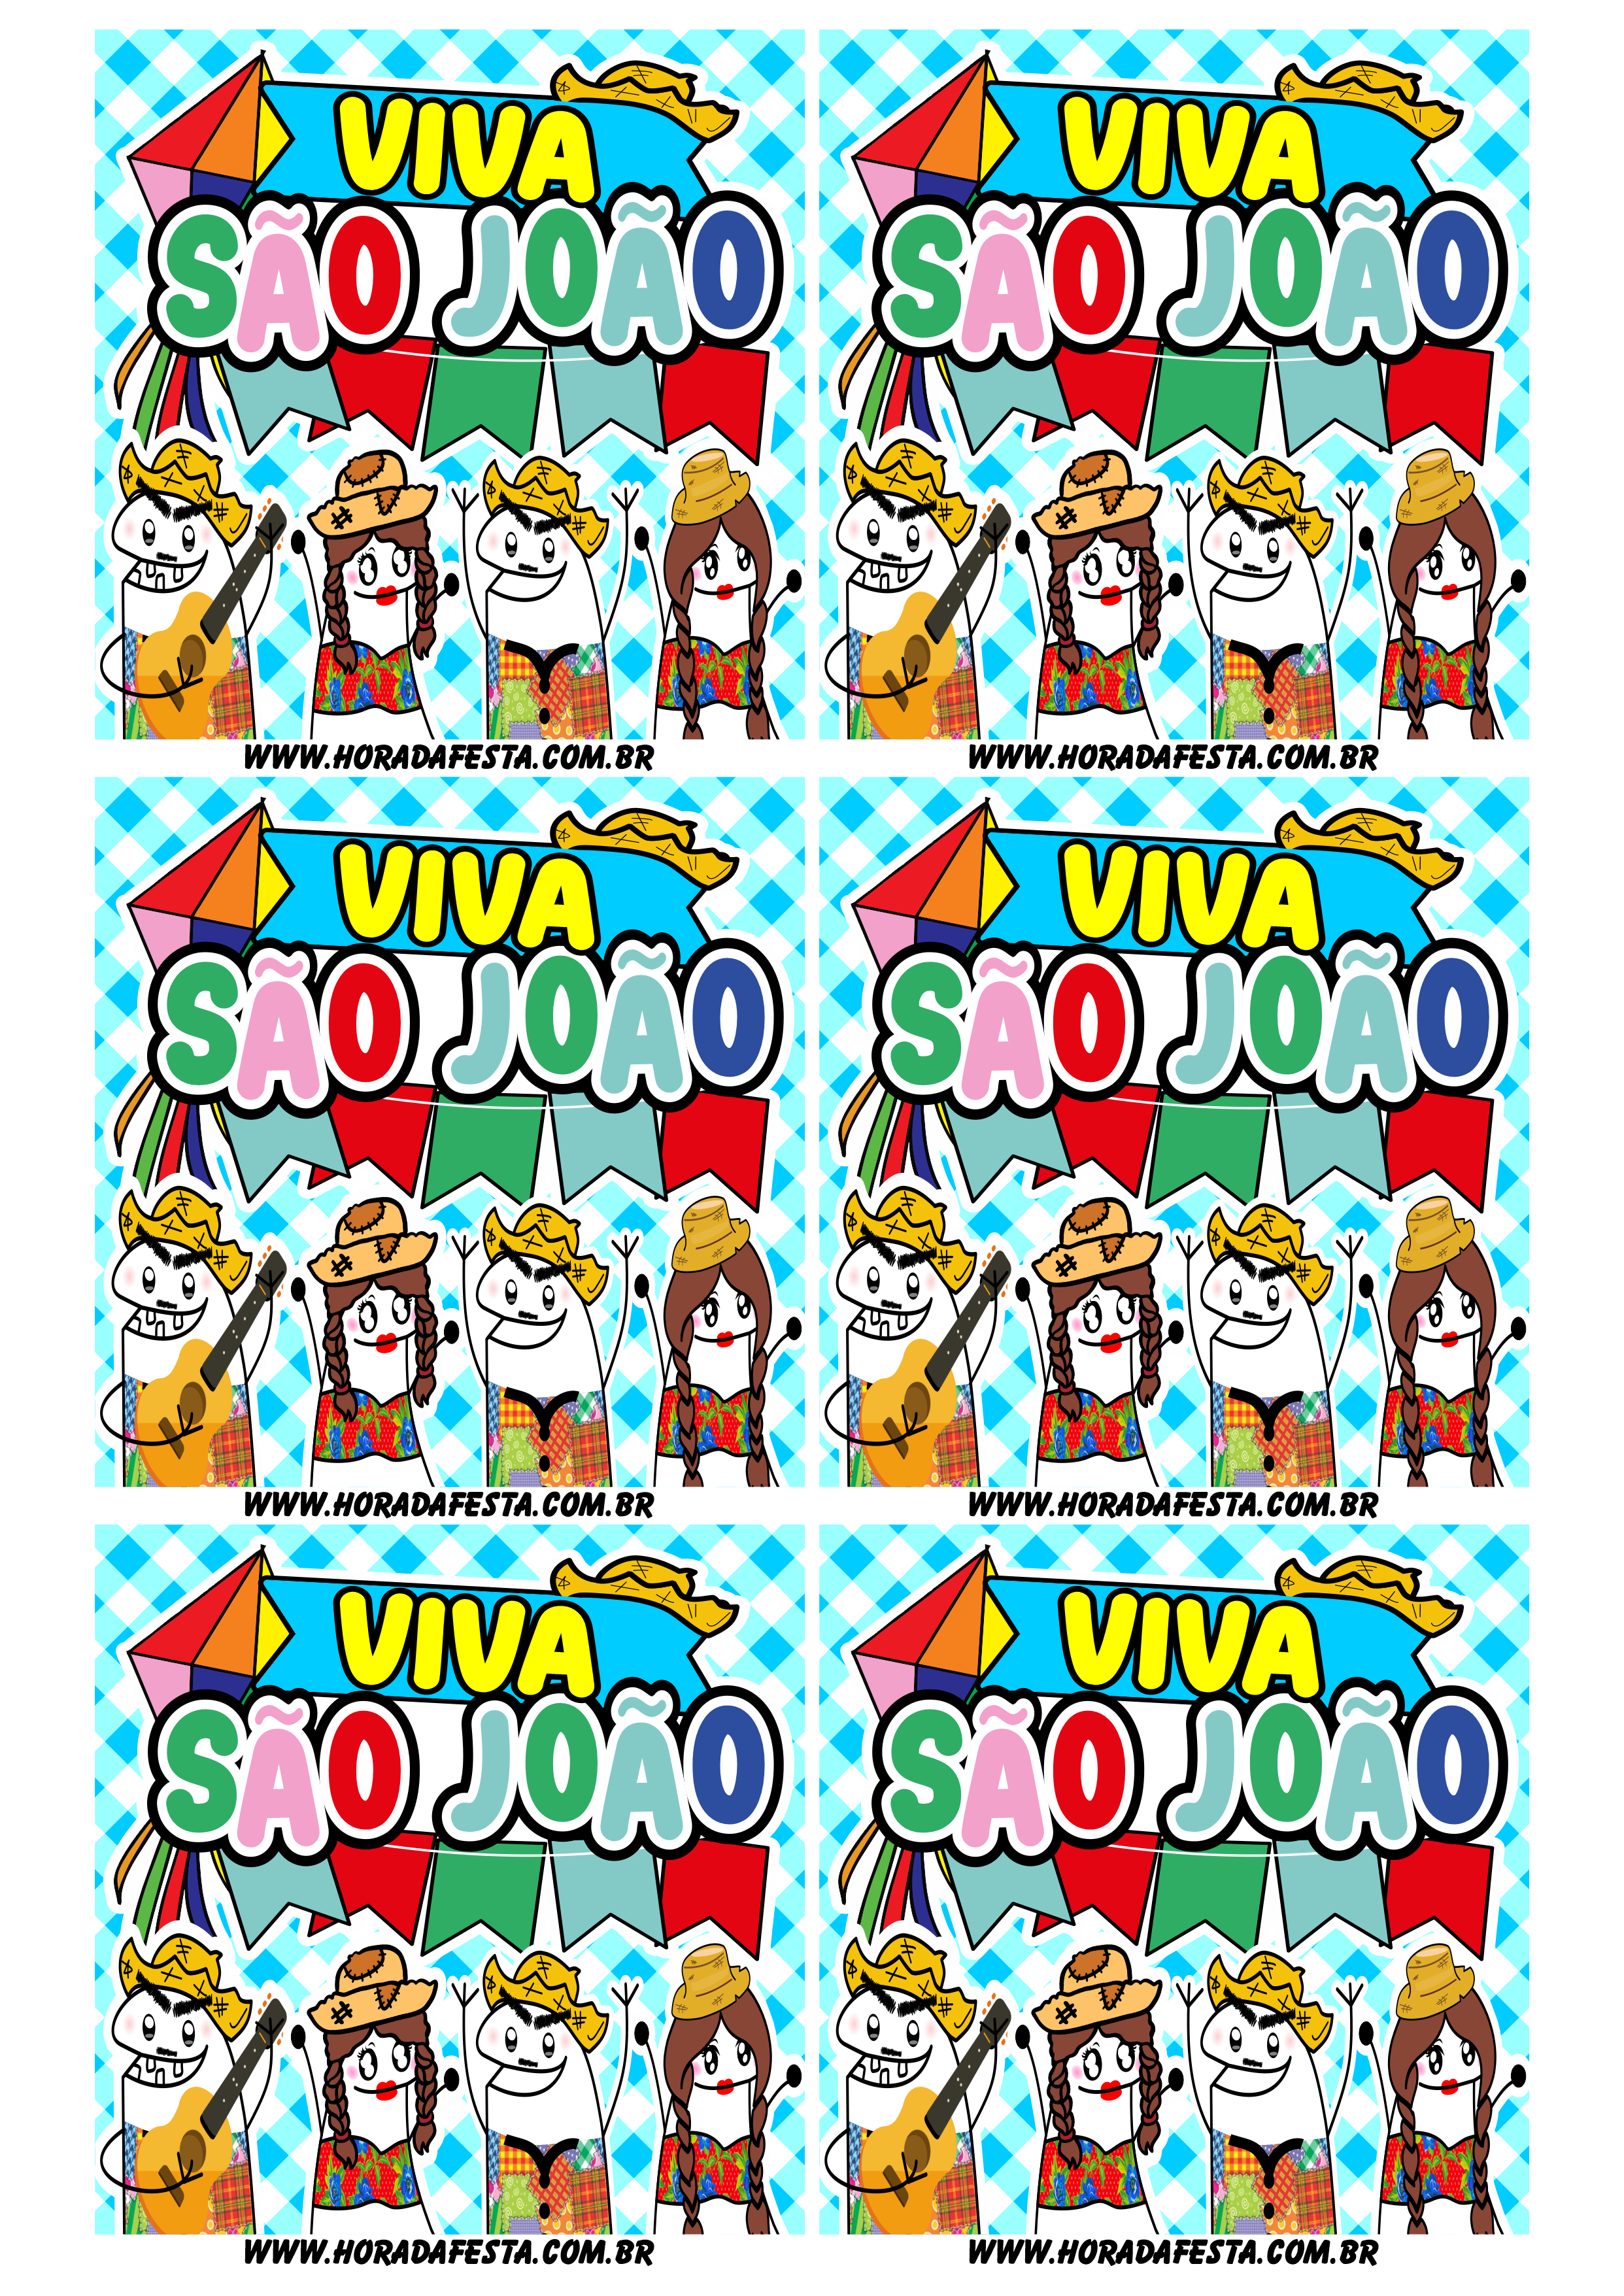 Viva são joão adesivo tag sticker quadrado flork of cows figurinhas engraçadas 6 imagens png